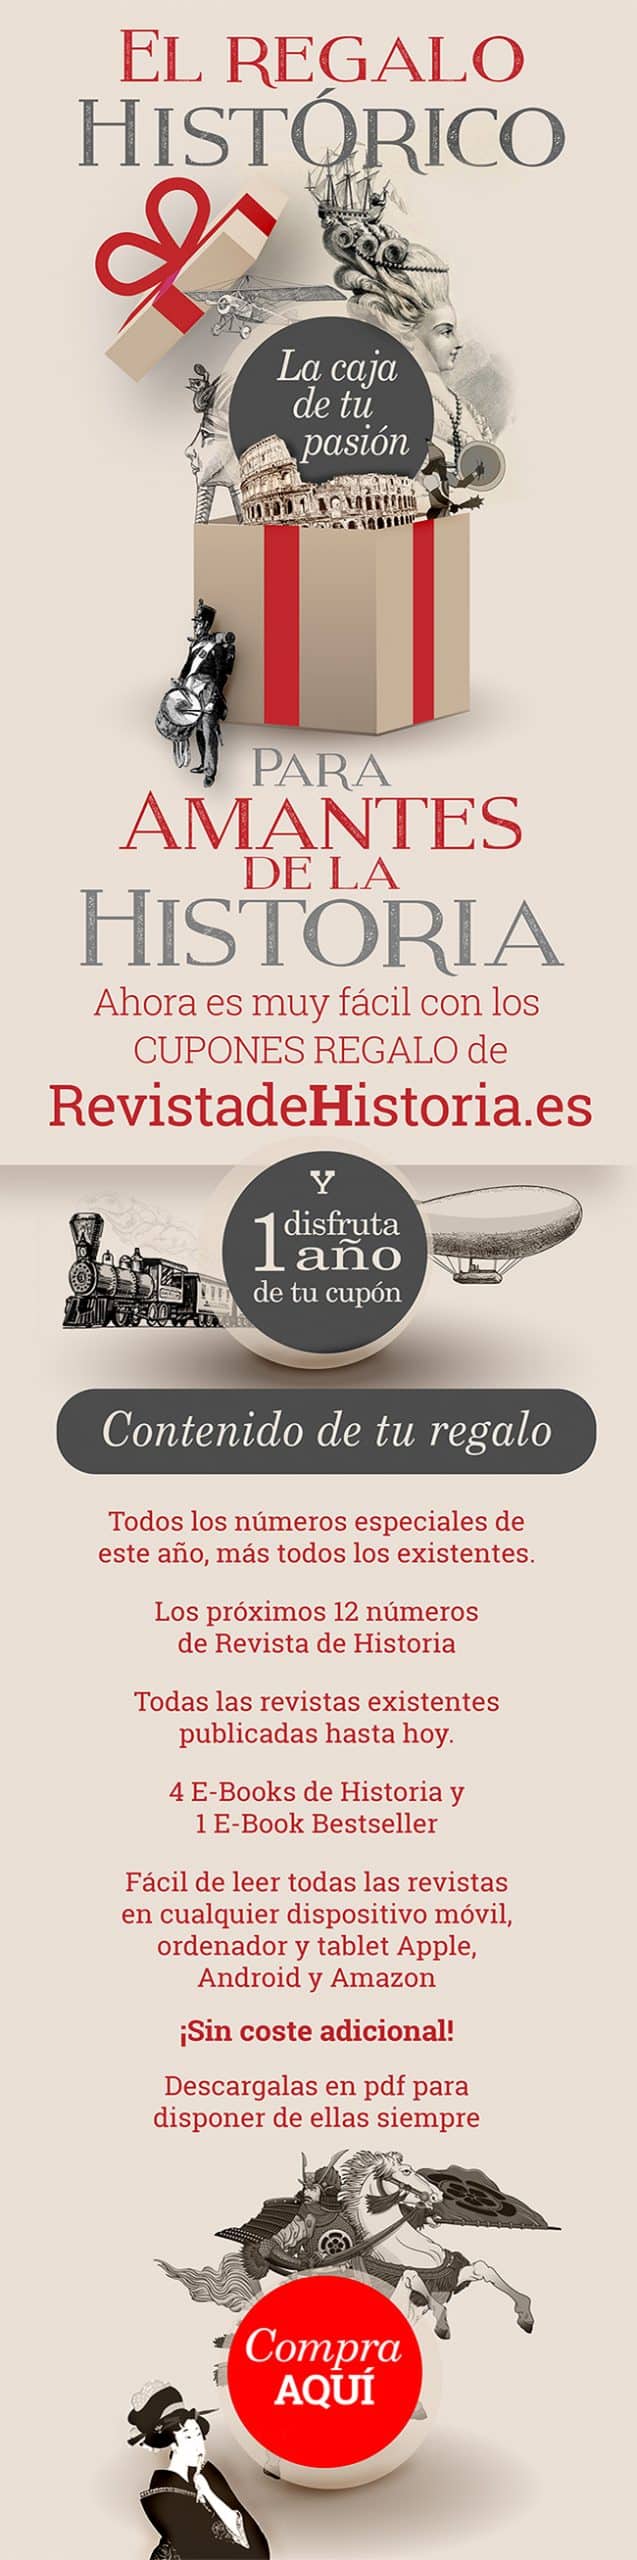 Regala Historia